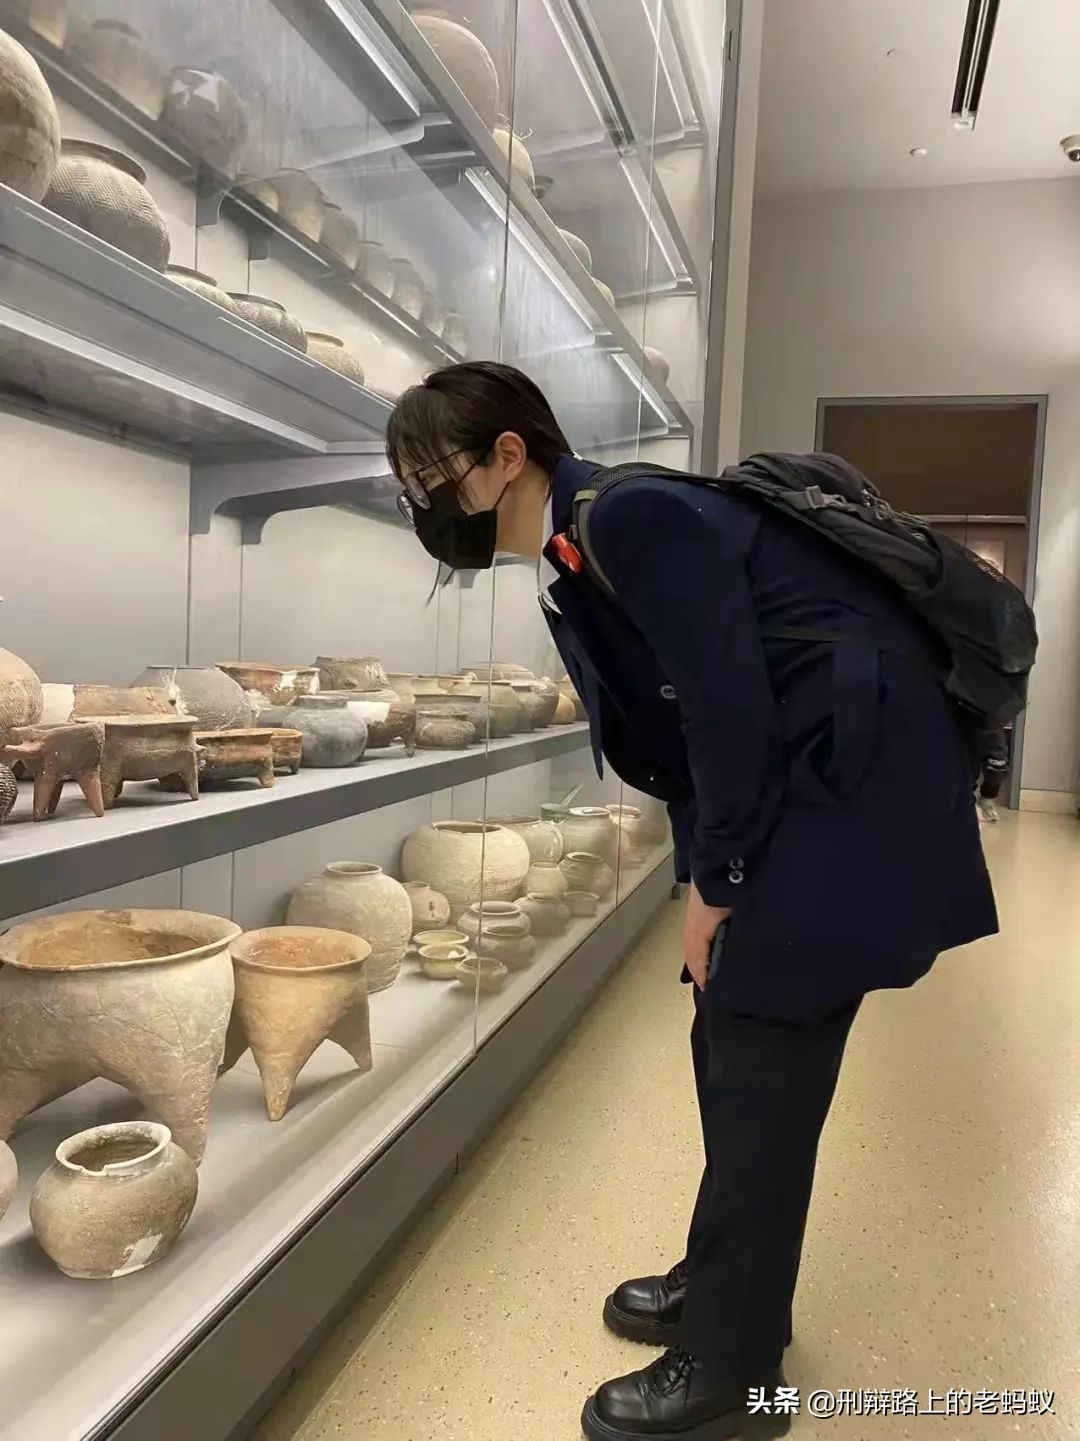 调研文物保护法律风险——蚂蚁刑辩团队走进南京博物院